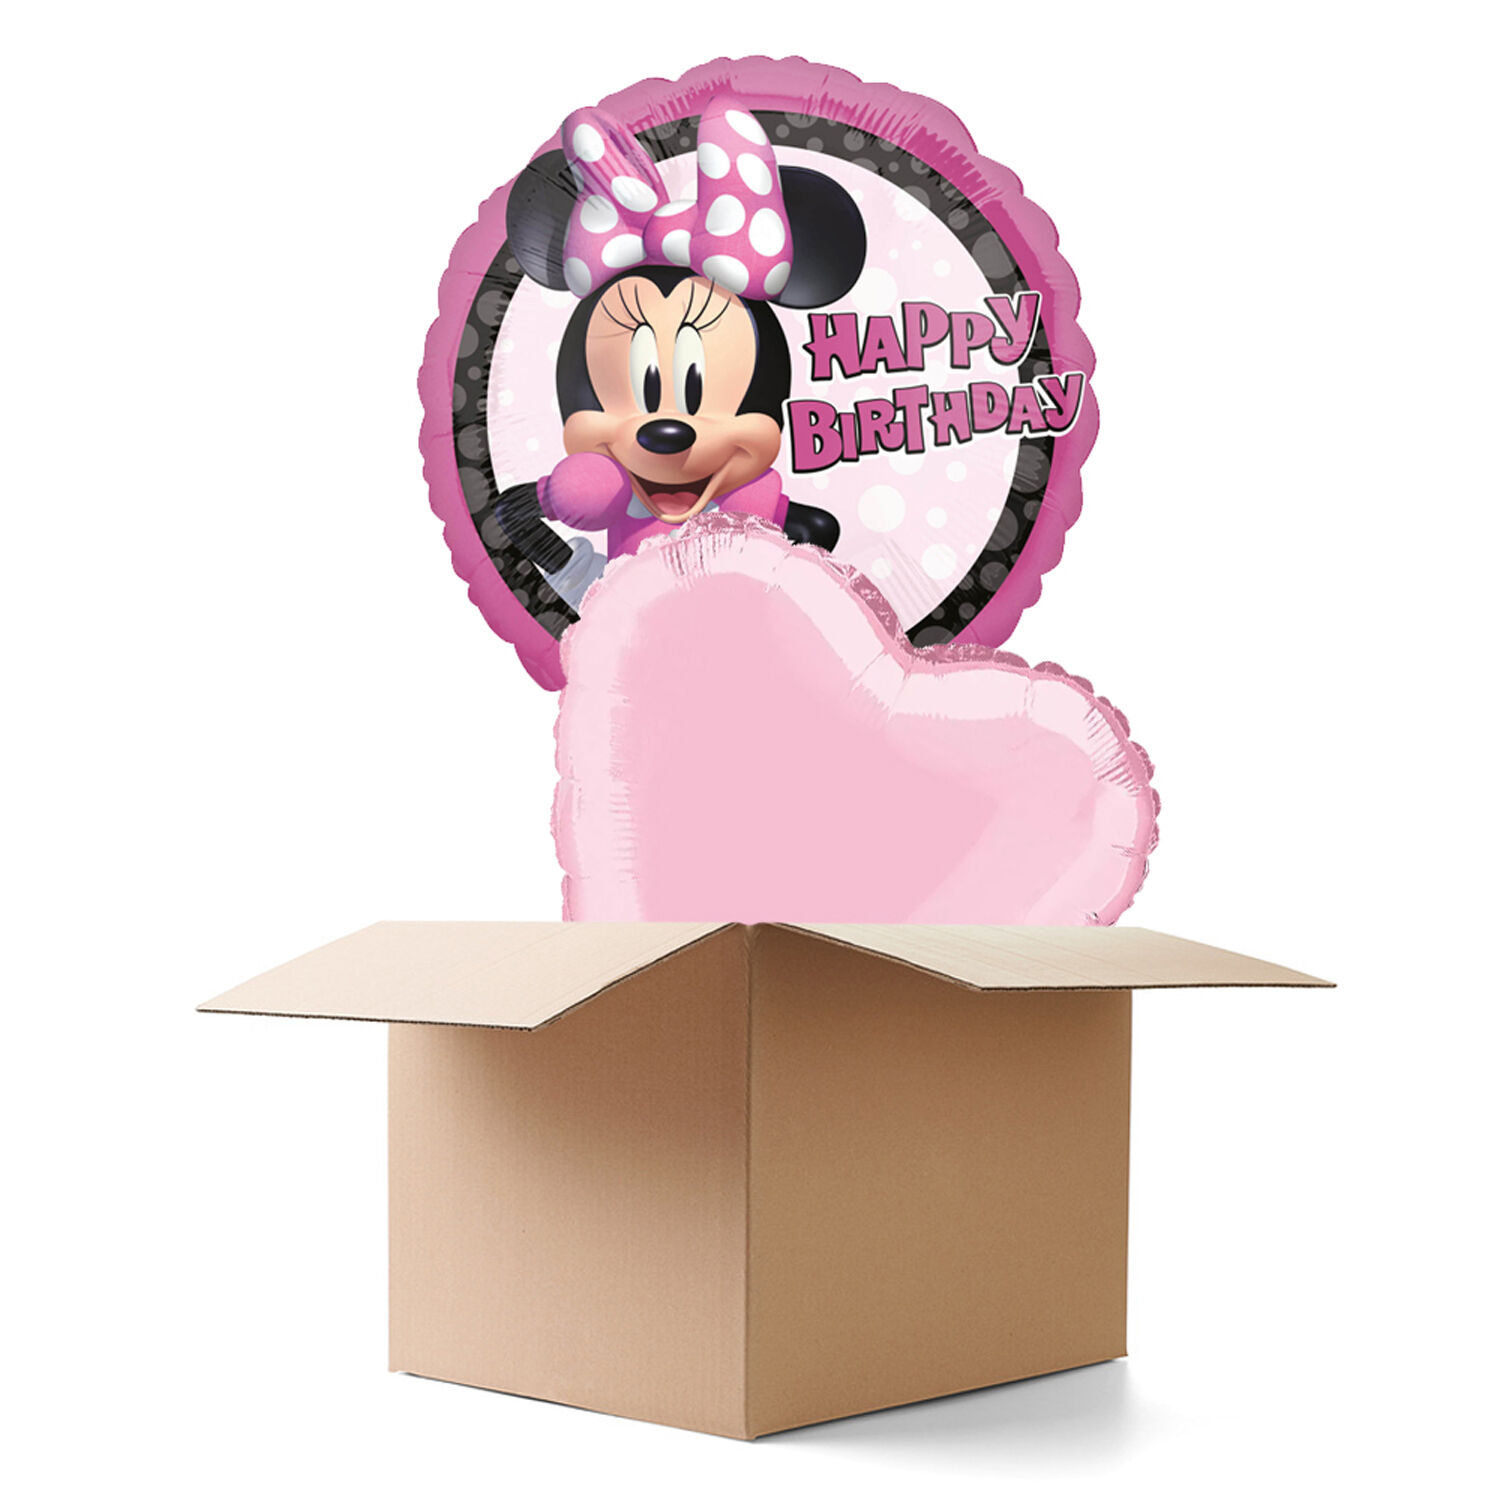 NEU Ballongrüsse Minnie Mouse Forever HBD, 2 Ballons